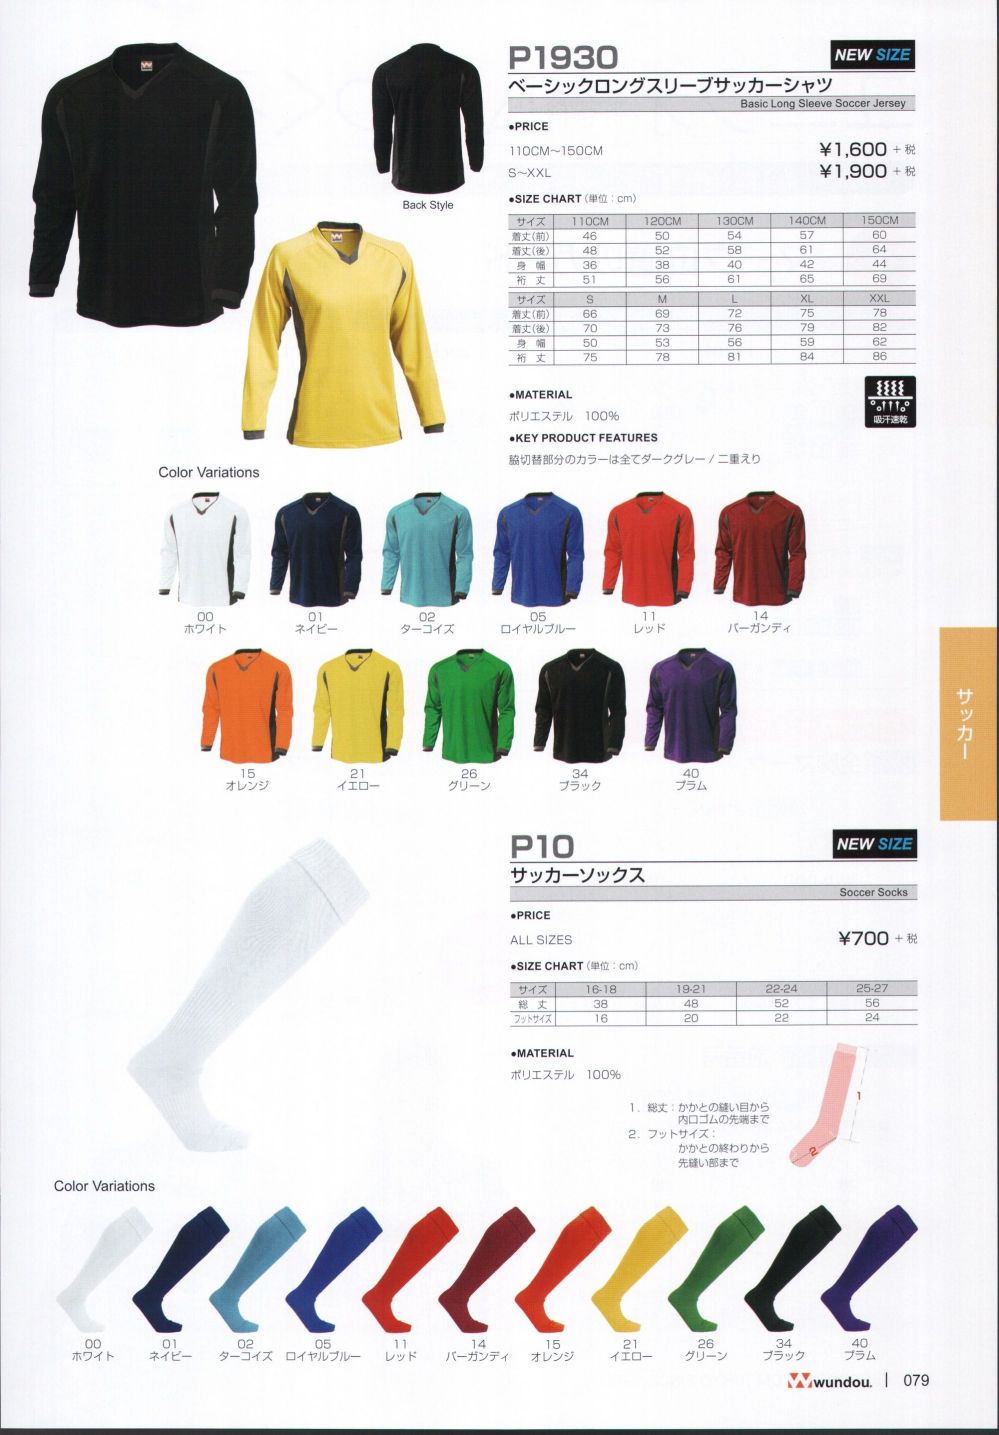 ベーシックロングスリーブサッカーシャツ ジュニアサイズ P1930-02 ターコイズ サッカー ウンドウ wundou スポーツウエア